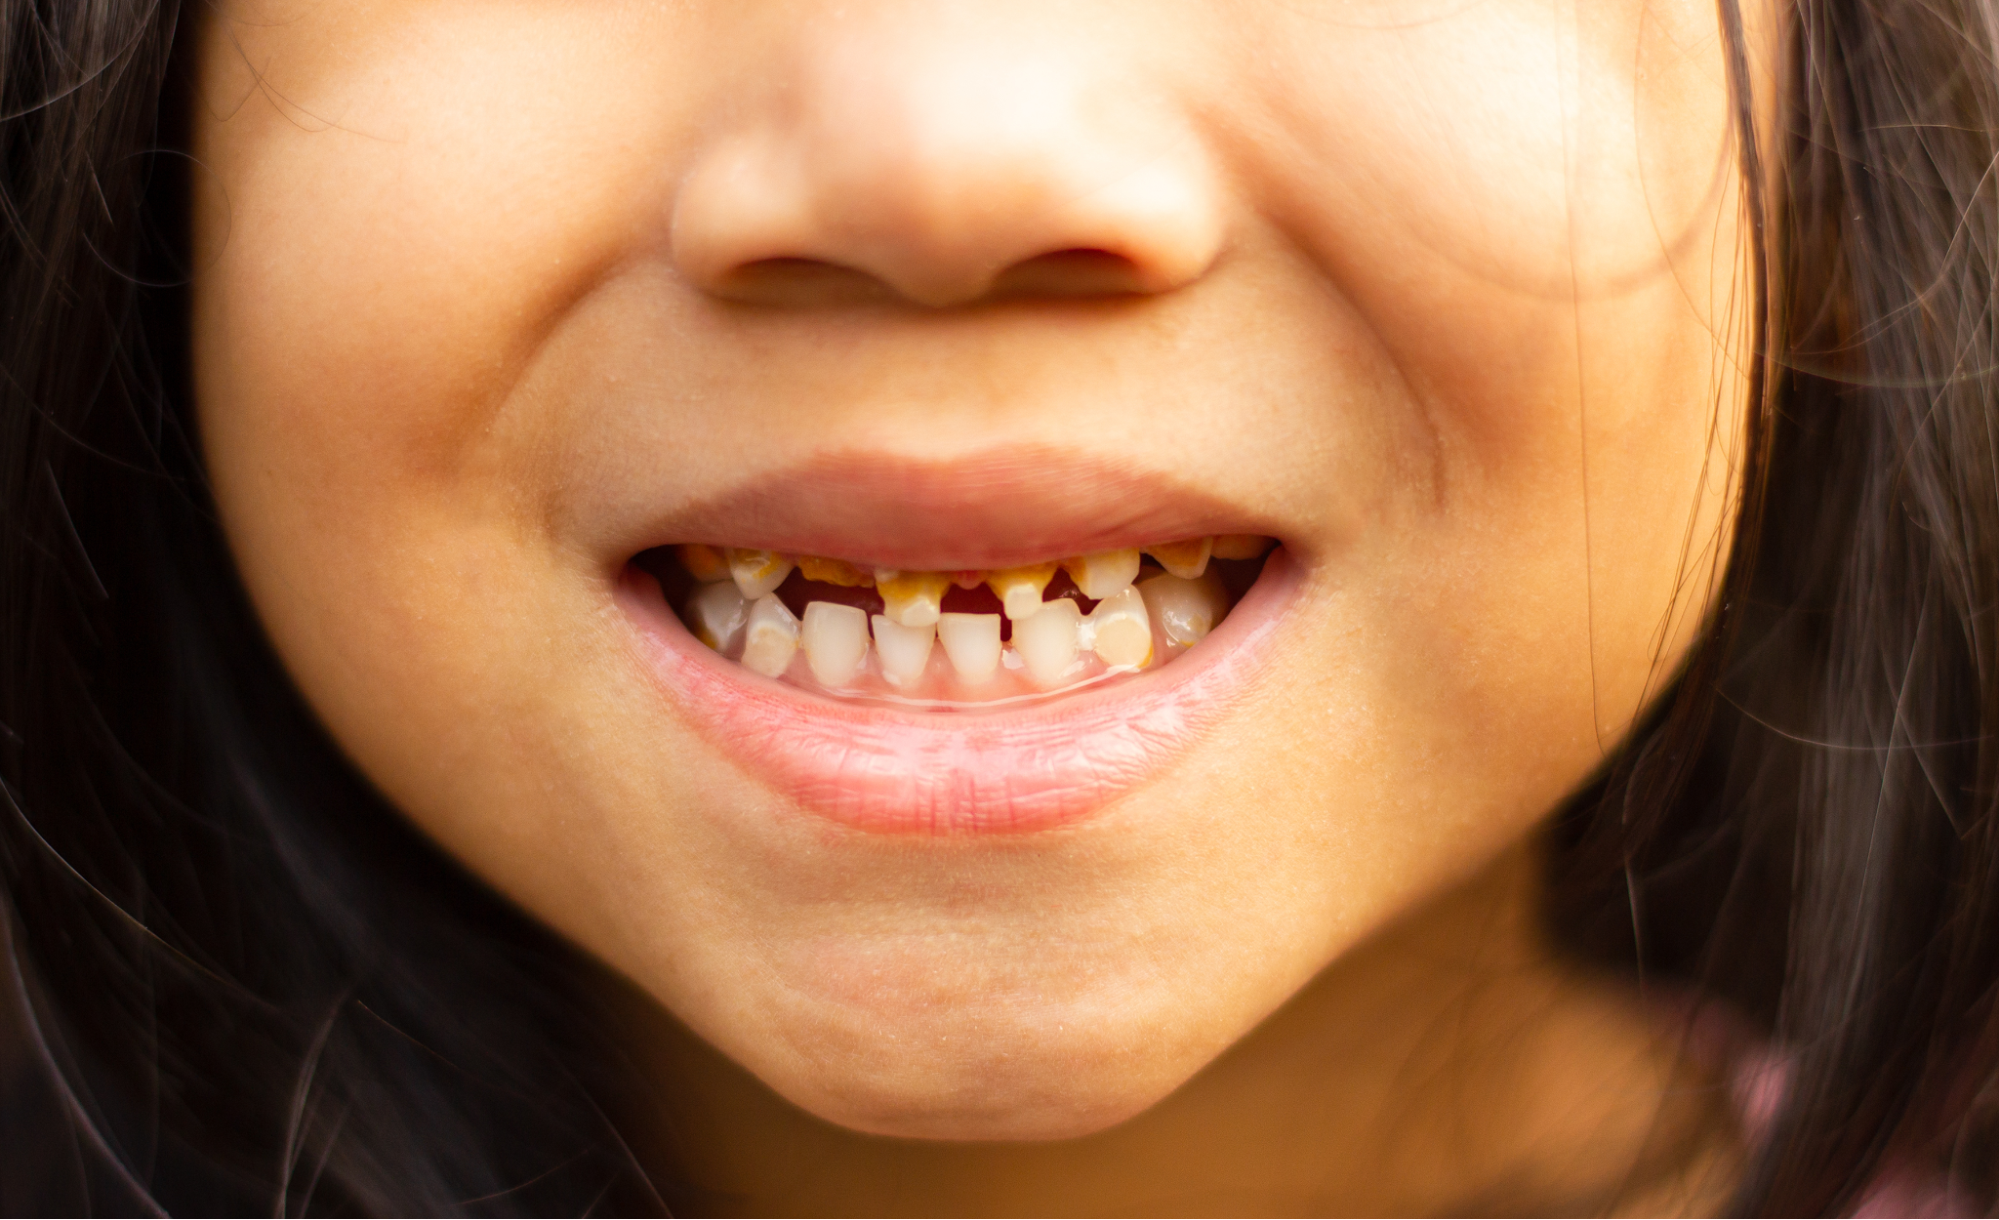 醫學界對於缺牙症成因仍未有確切定論